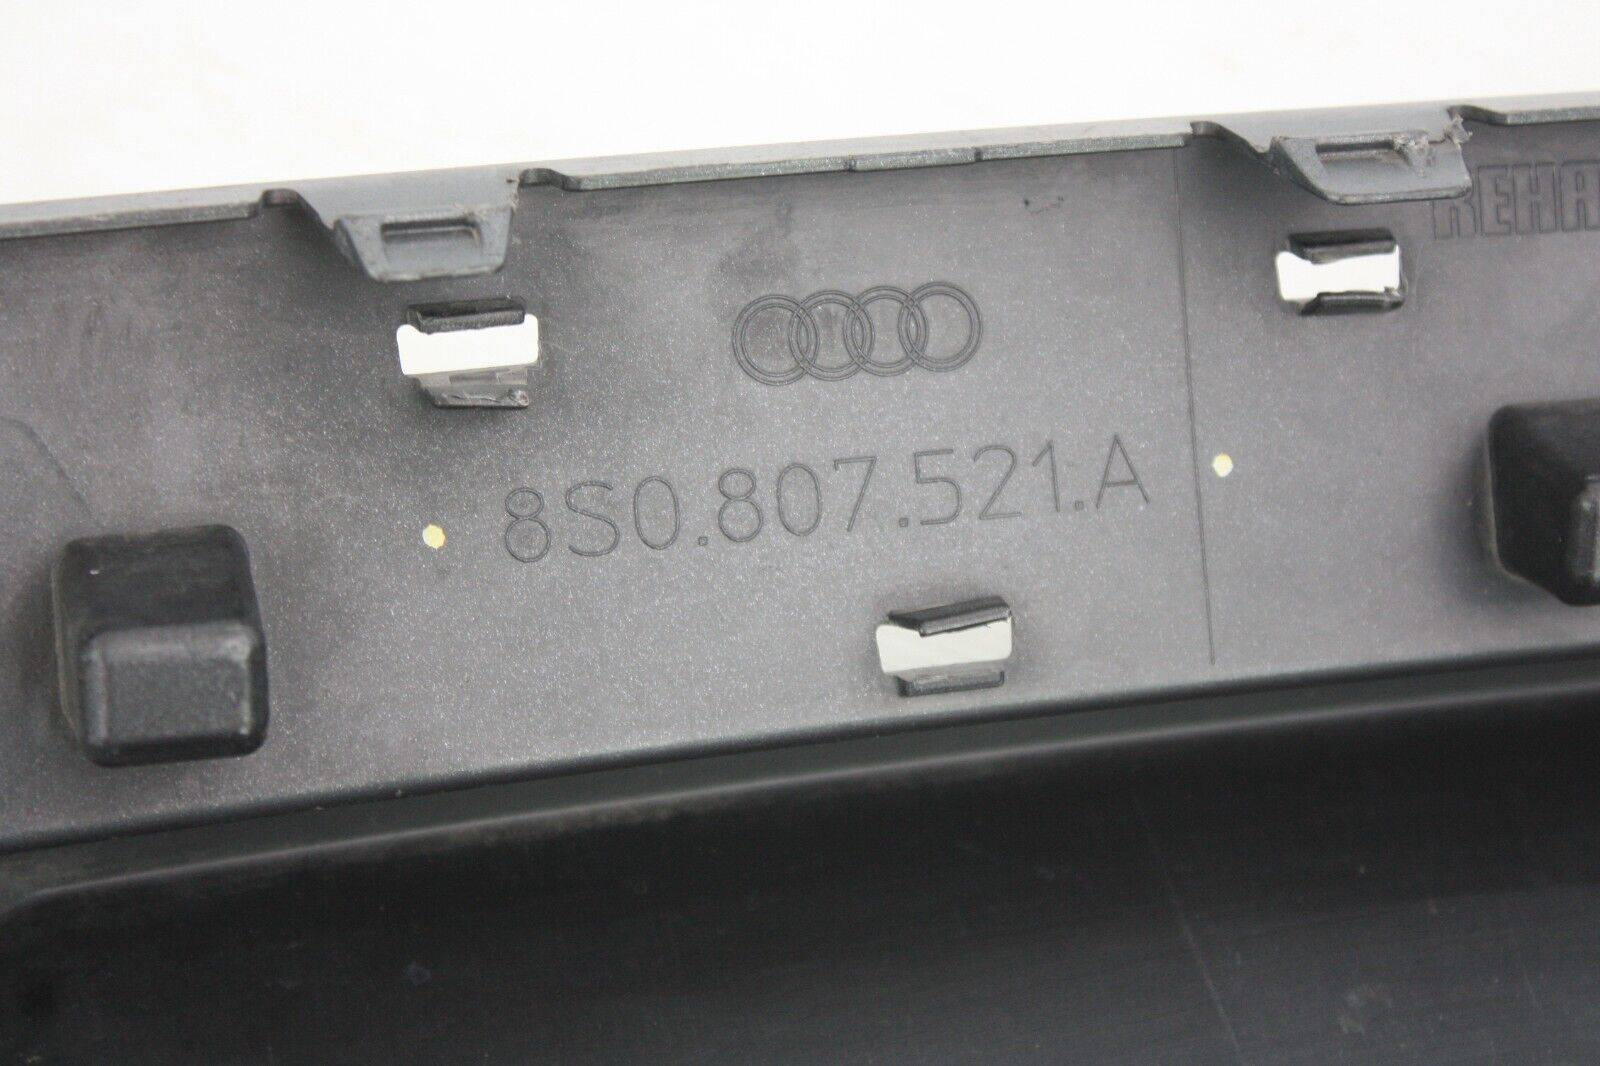 Audi-TT-S-Line-Rear-Bumper-Diffuser-2014-TO-2018-Genuine-175371374616-9